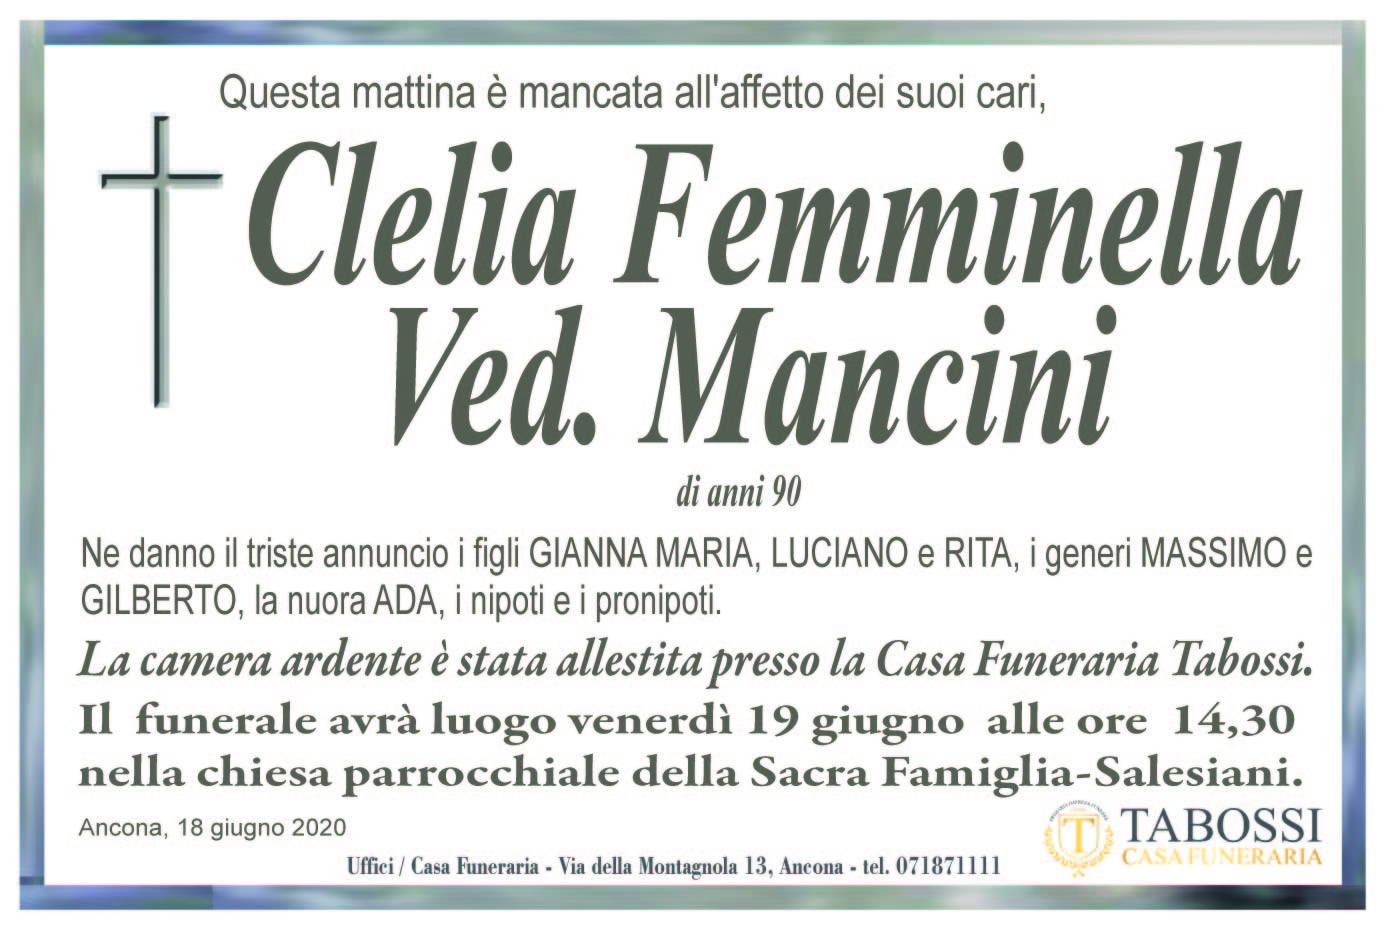 Clelia Femminella